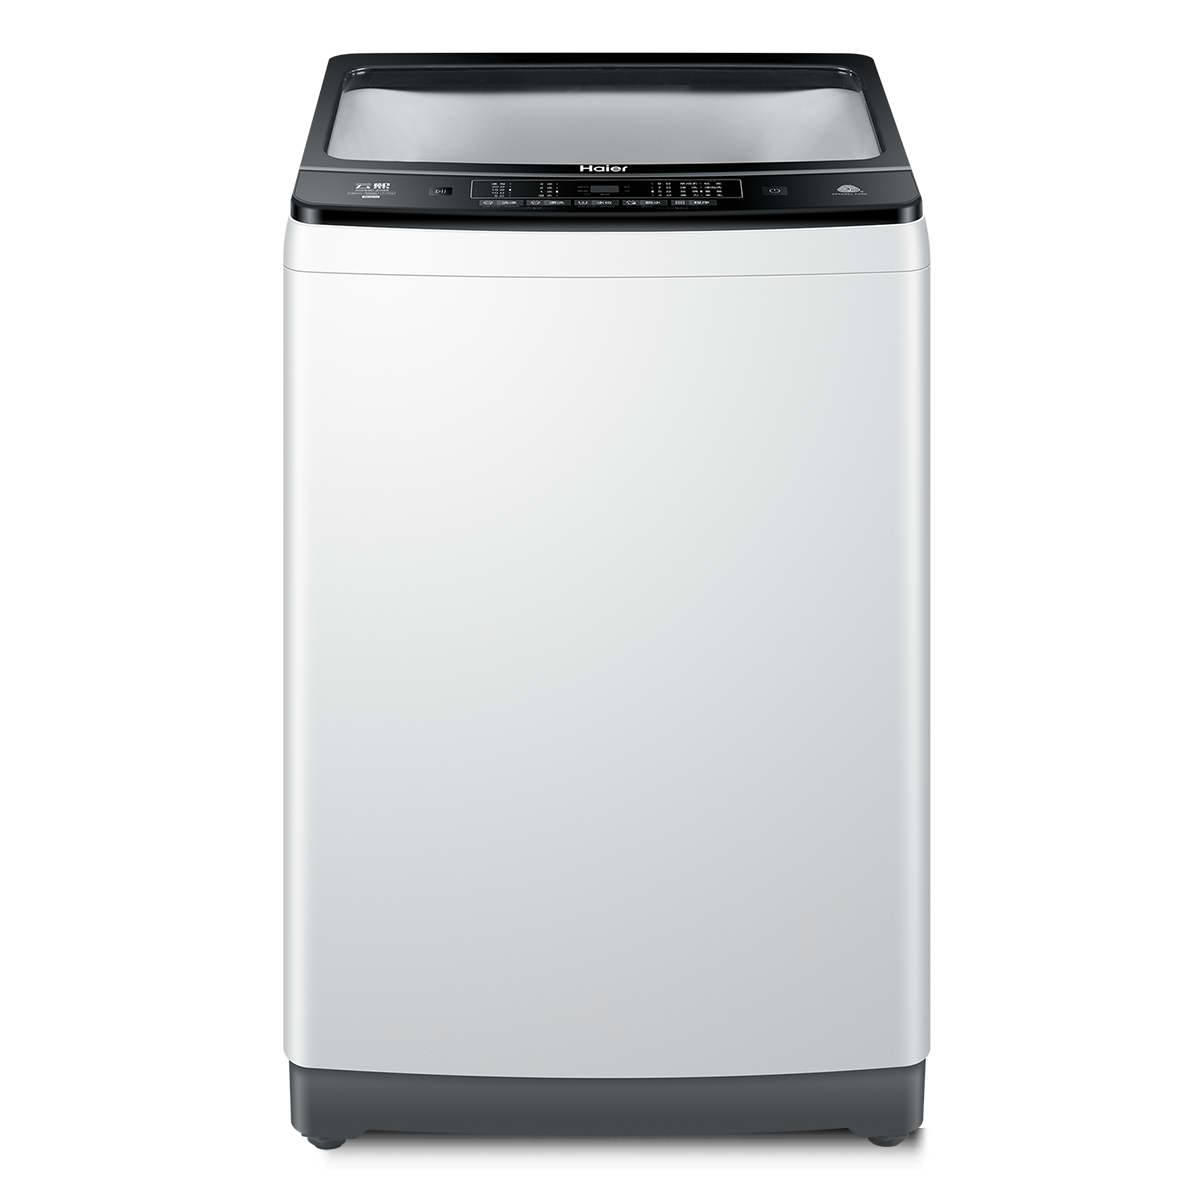 海尔Haier洗衣机 XQS90-Z028 说明书